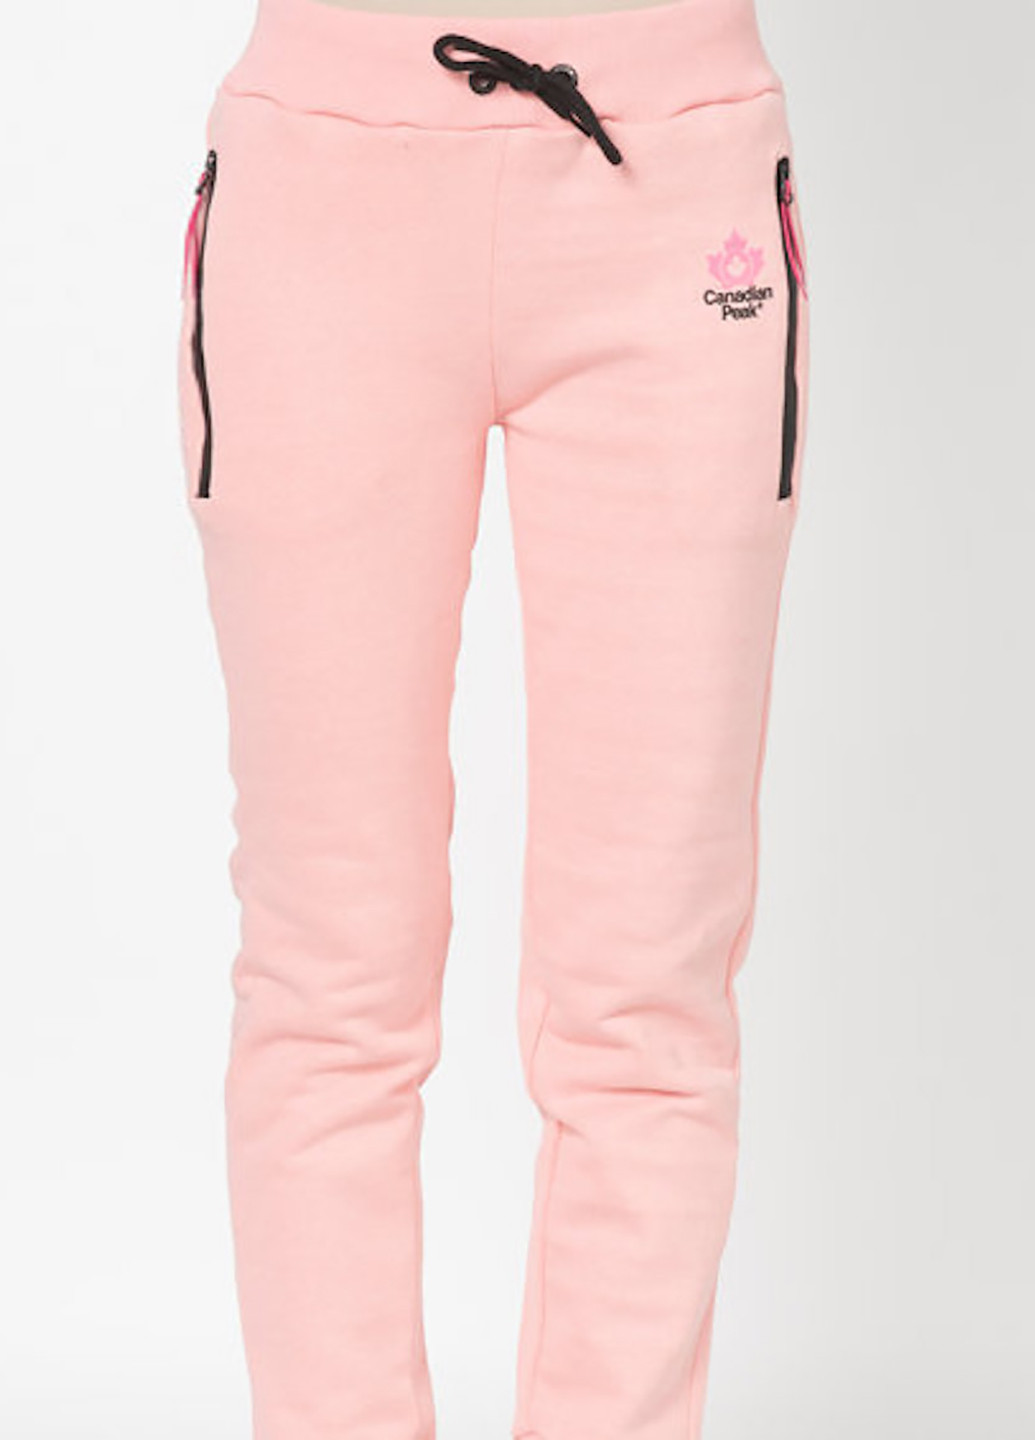 Светло-розовые спортивные зимние джоггеры брюки Canadian Peak